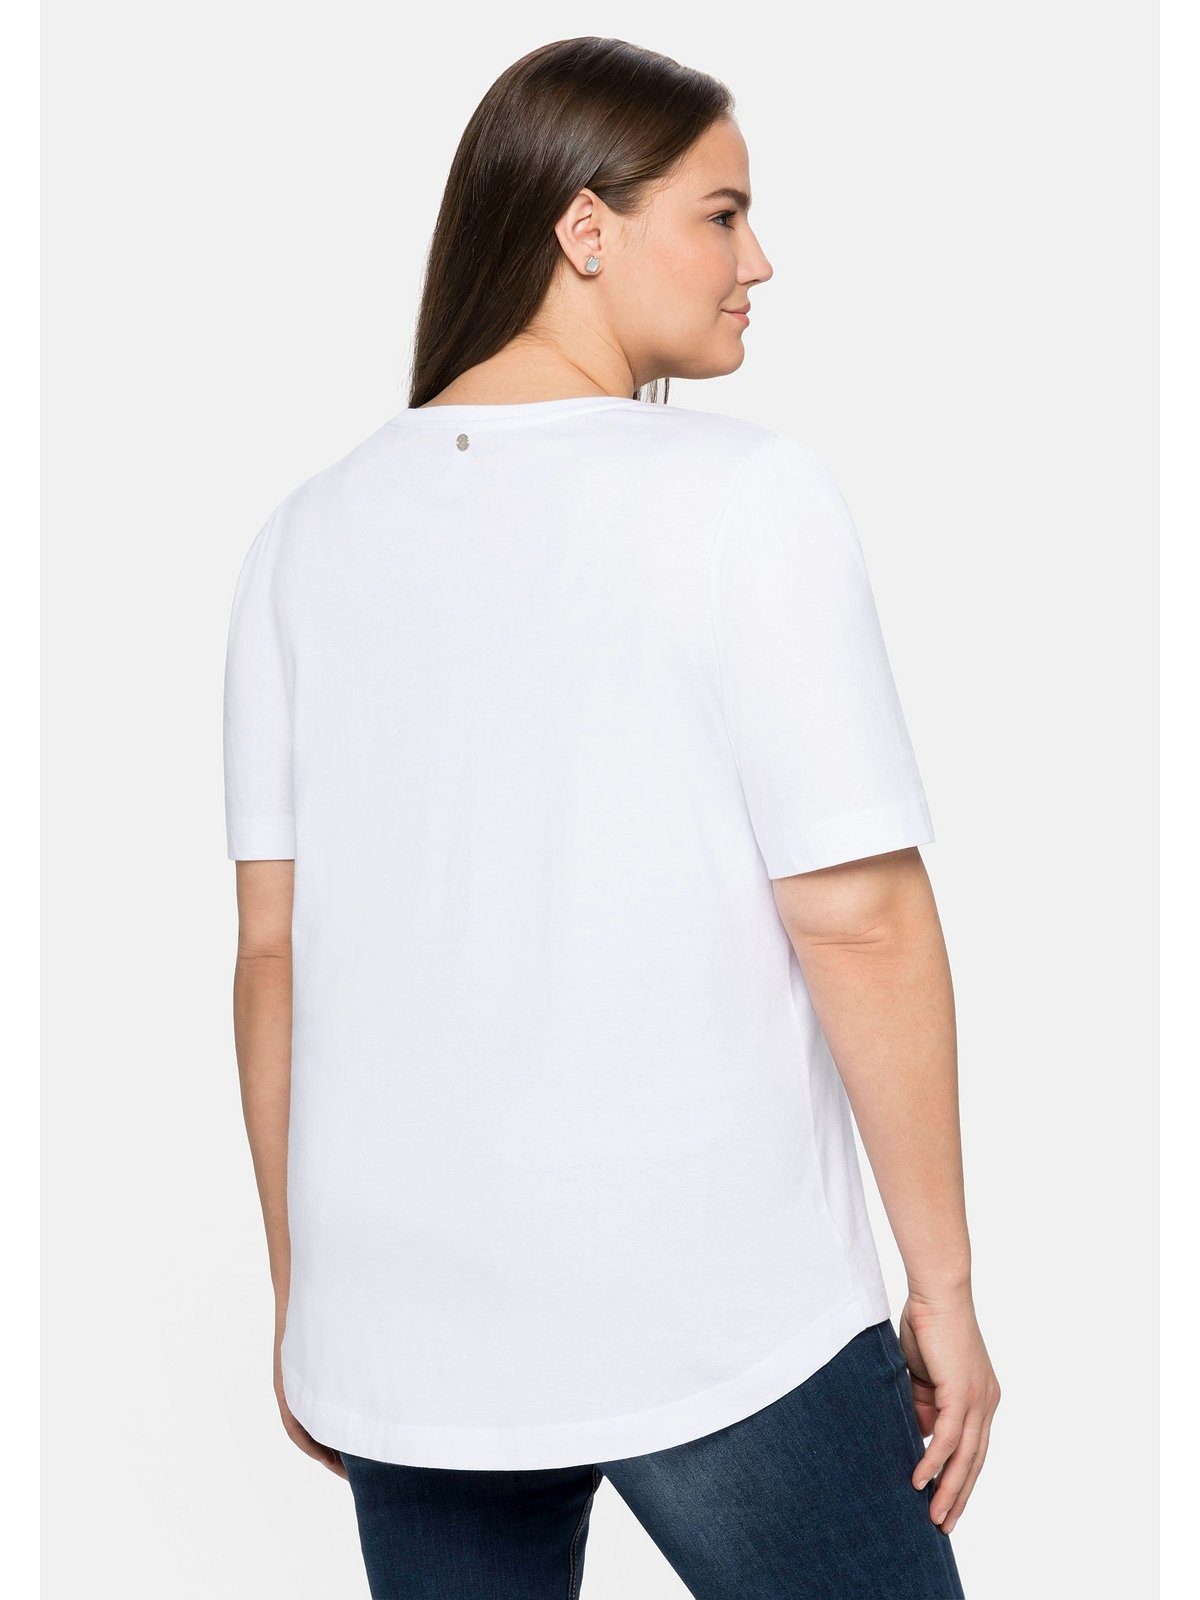 Sheego T-Shirt Große Größen Baumwolle mit weiß Frontdruck aus